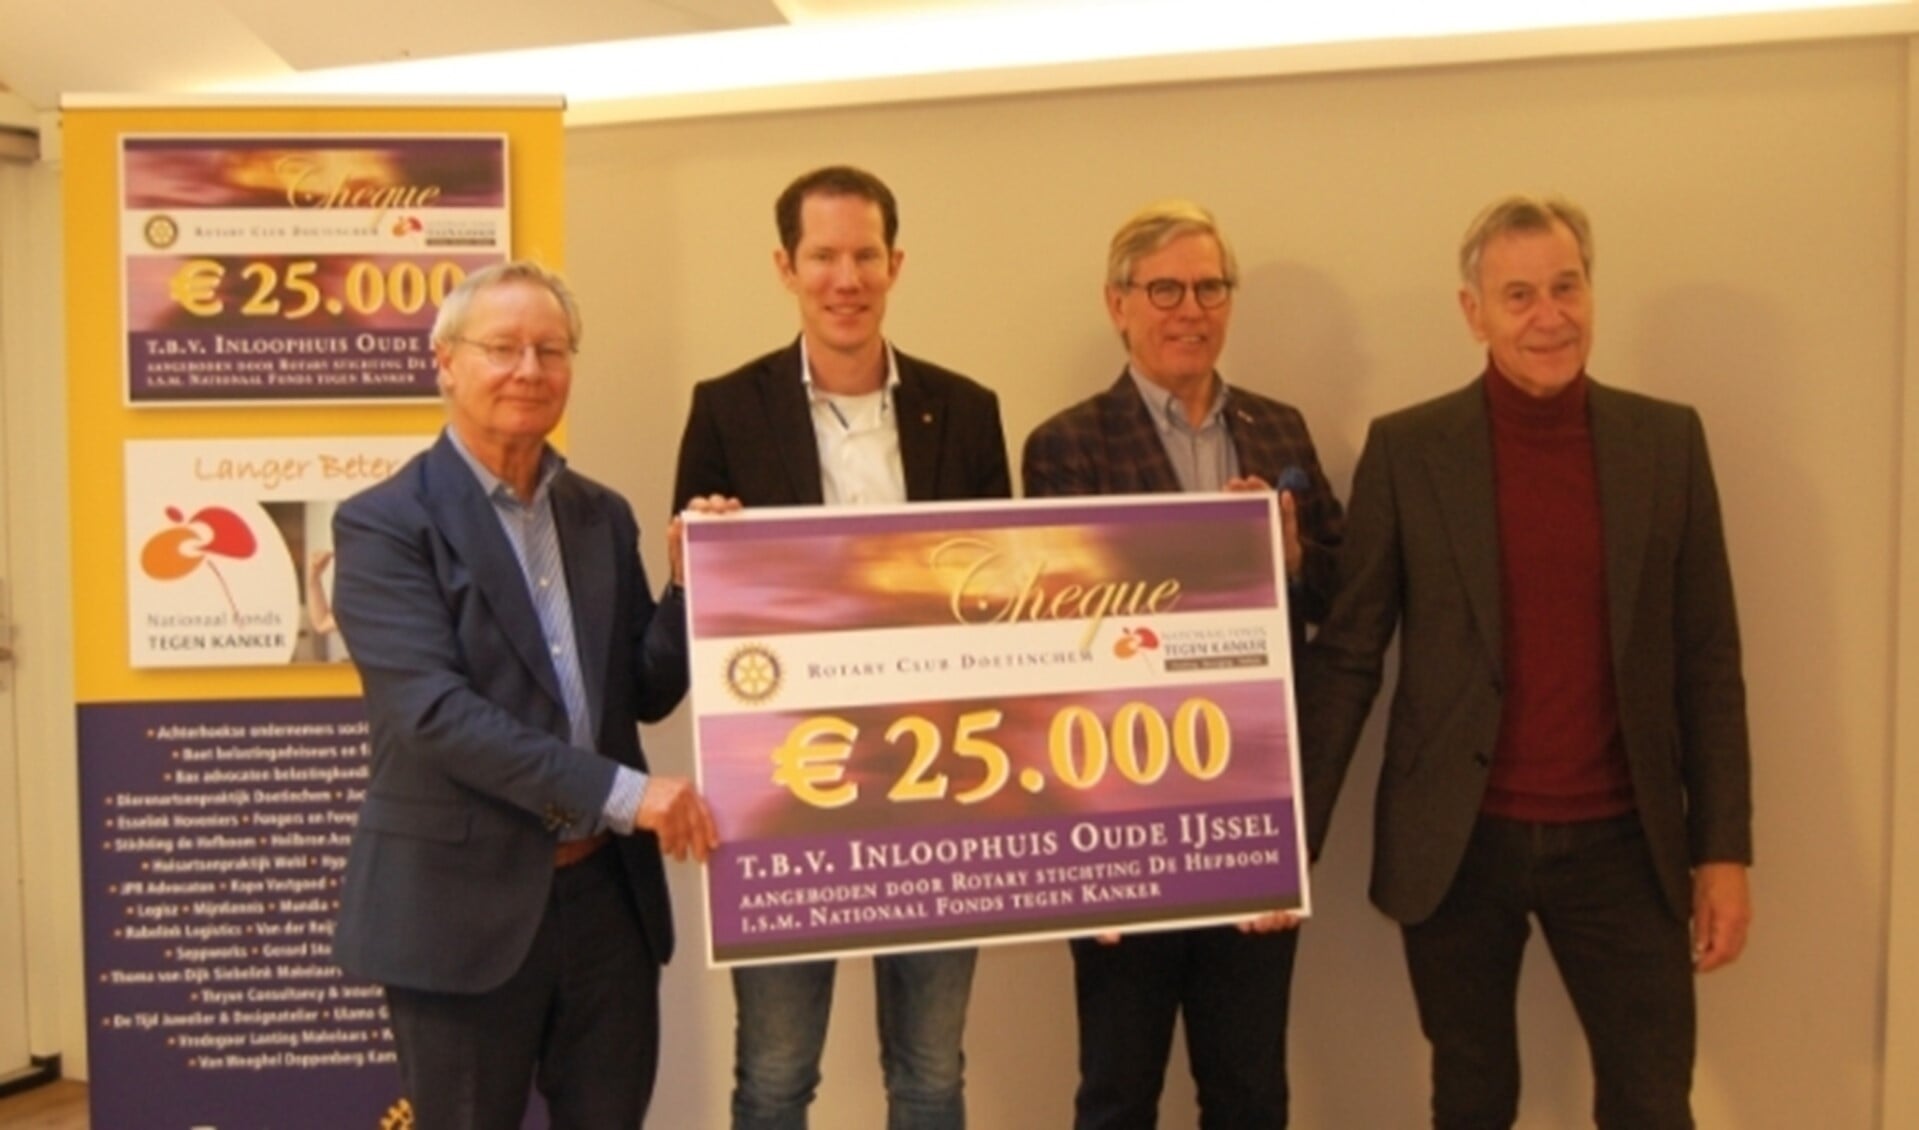 V.l.n.r. Namens Rotary Club Doetinchem overhandigen Frank Jansen en Jeroen Sanders de cheque aan bestuursleden Ton ten Have en Henk Wubbels van het Inloophuis Oude IJssel.